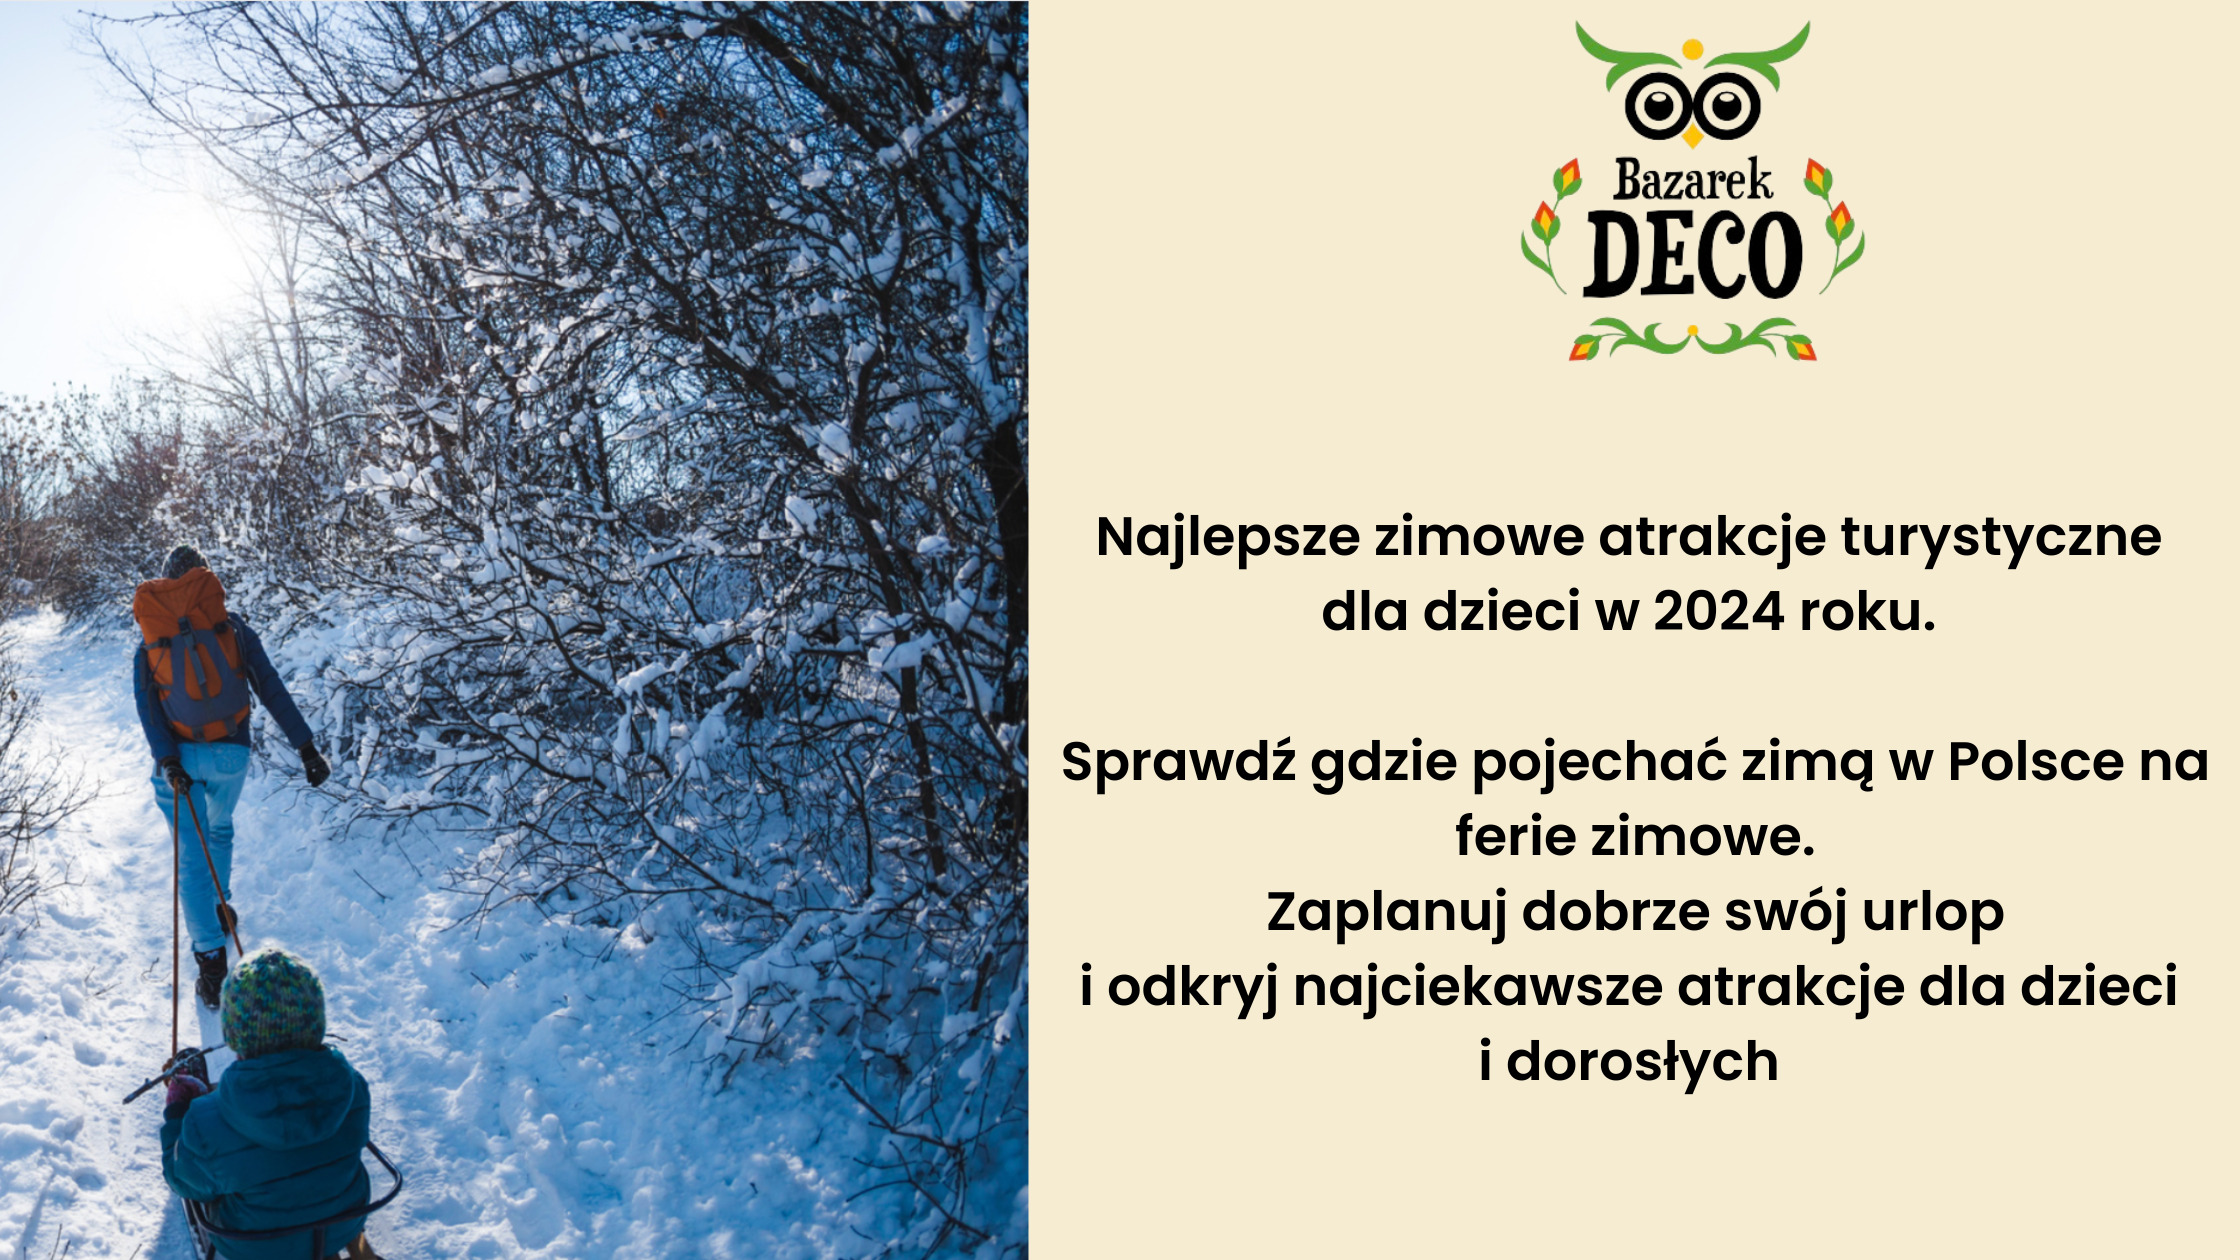 <strong />Najlepsze zimowe atrakcje turystyczne dla dzieci w 2024 roku – sprawdź gdzie pojechać zimą w Polsce na ferie zimowe</s